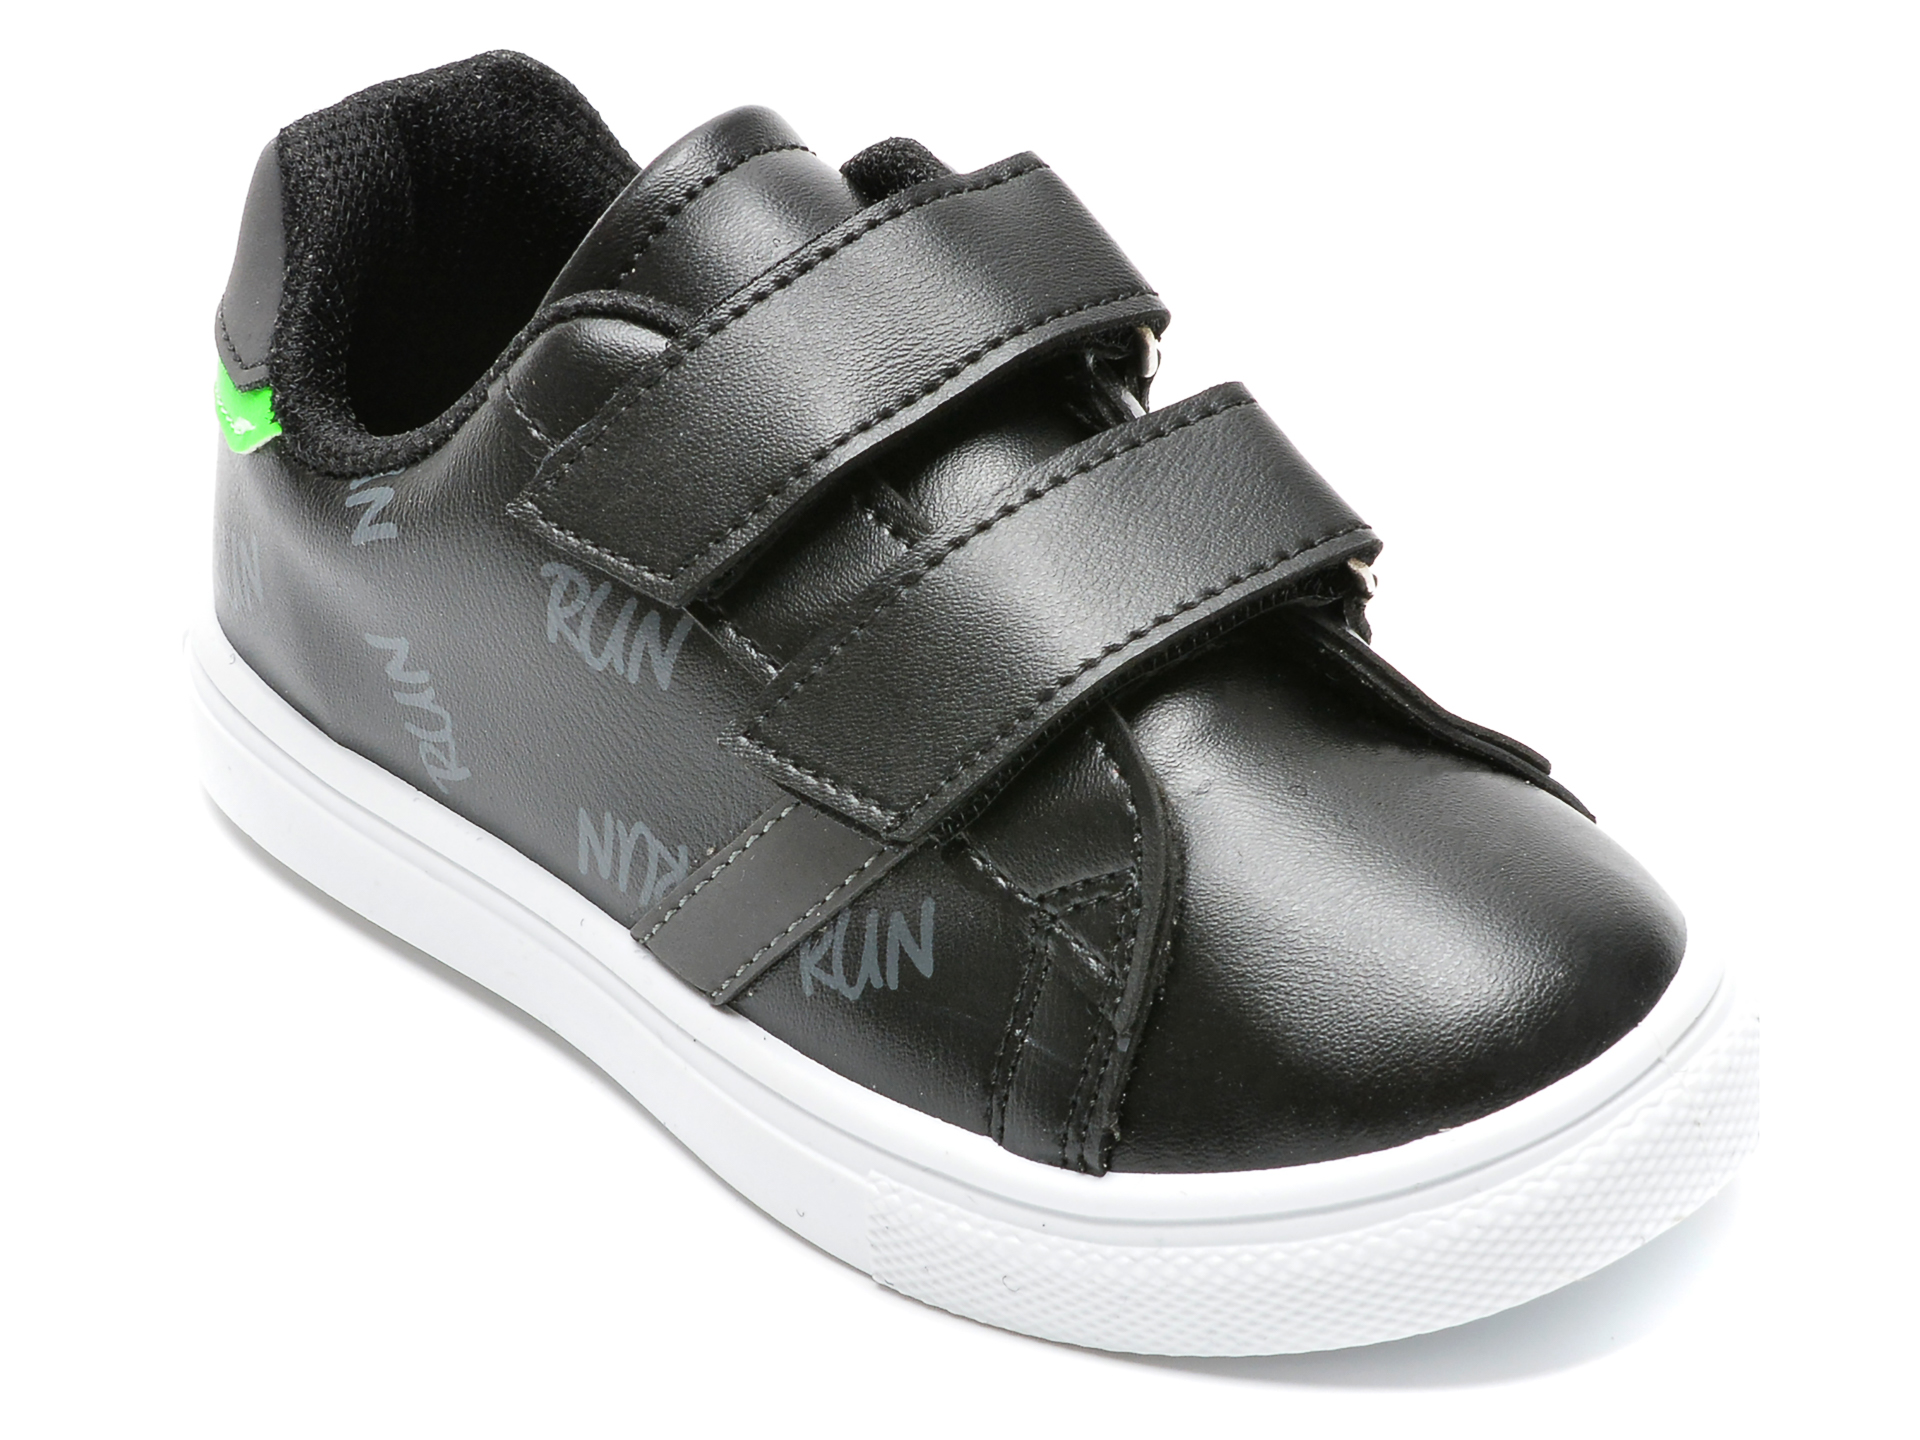 Pantofi sport POLARIS negri, 520139, din piele ecologica